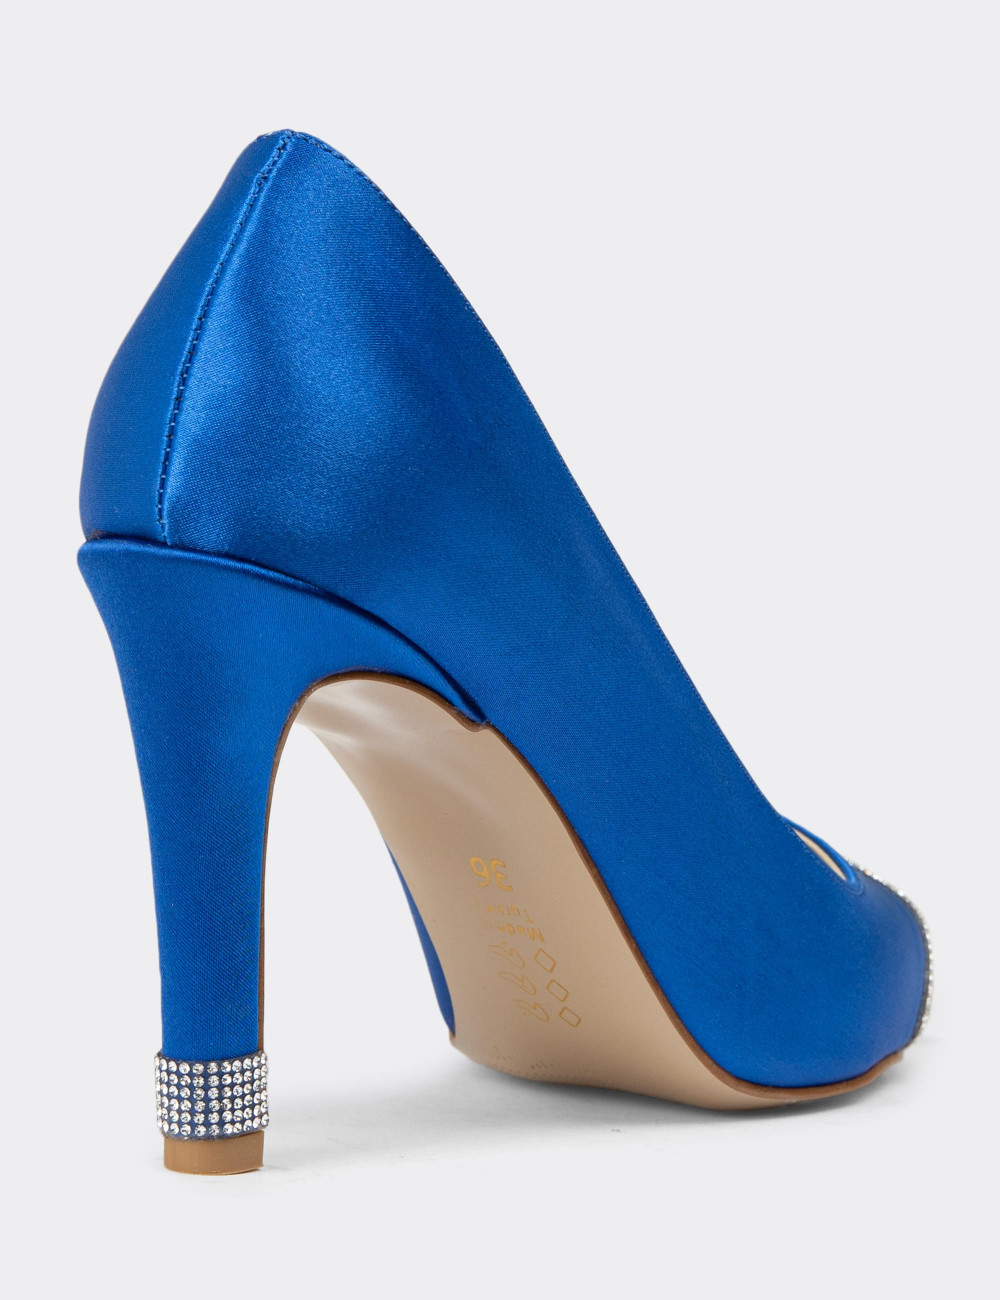 Mavi Stiletto Taşlı Kadın Topuklu Ayakkabı - K0030ZMVIM01